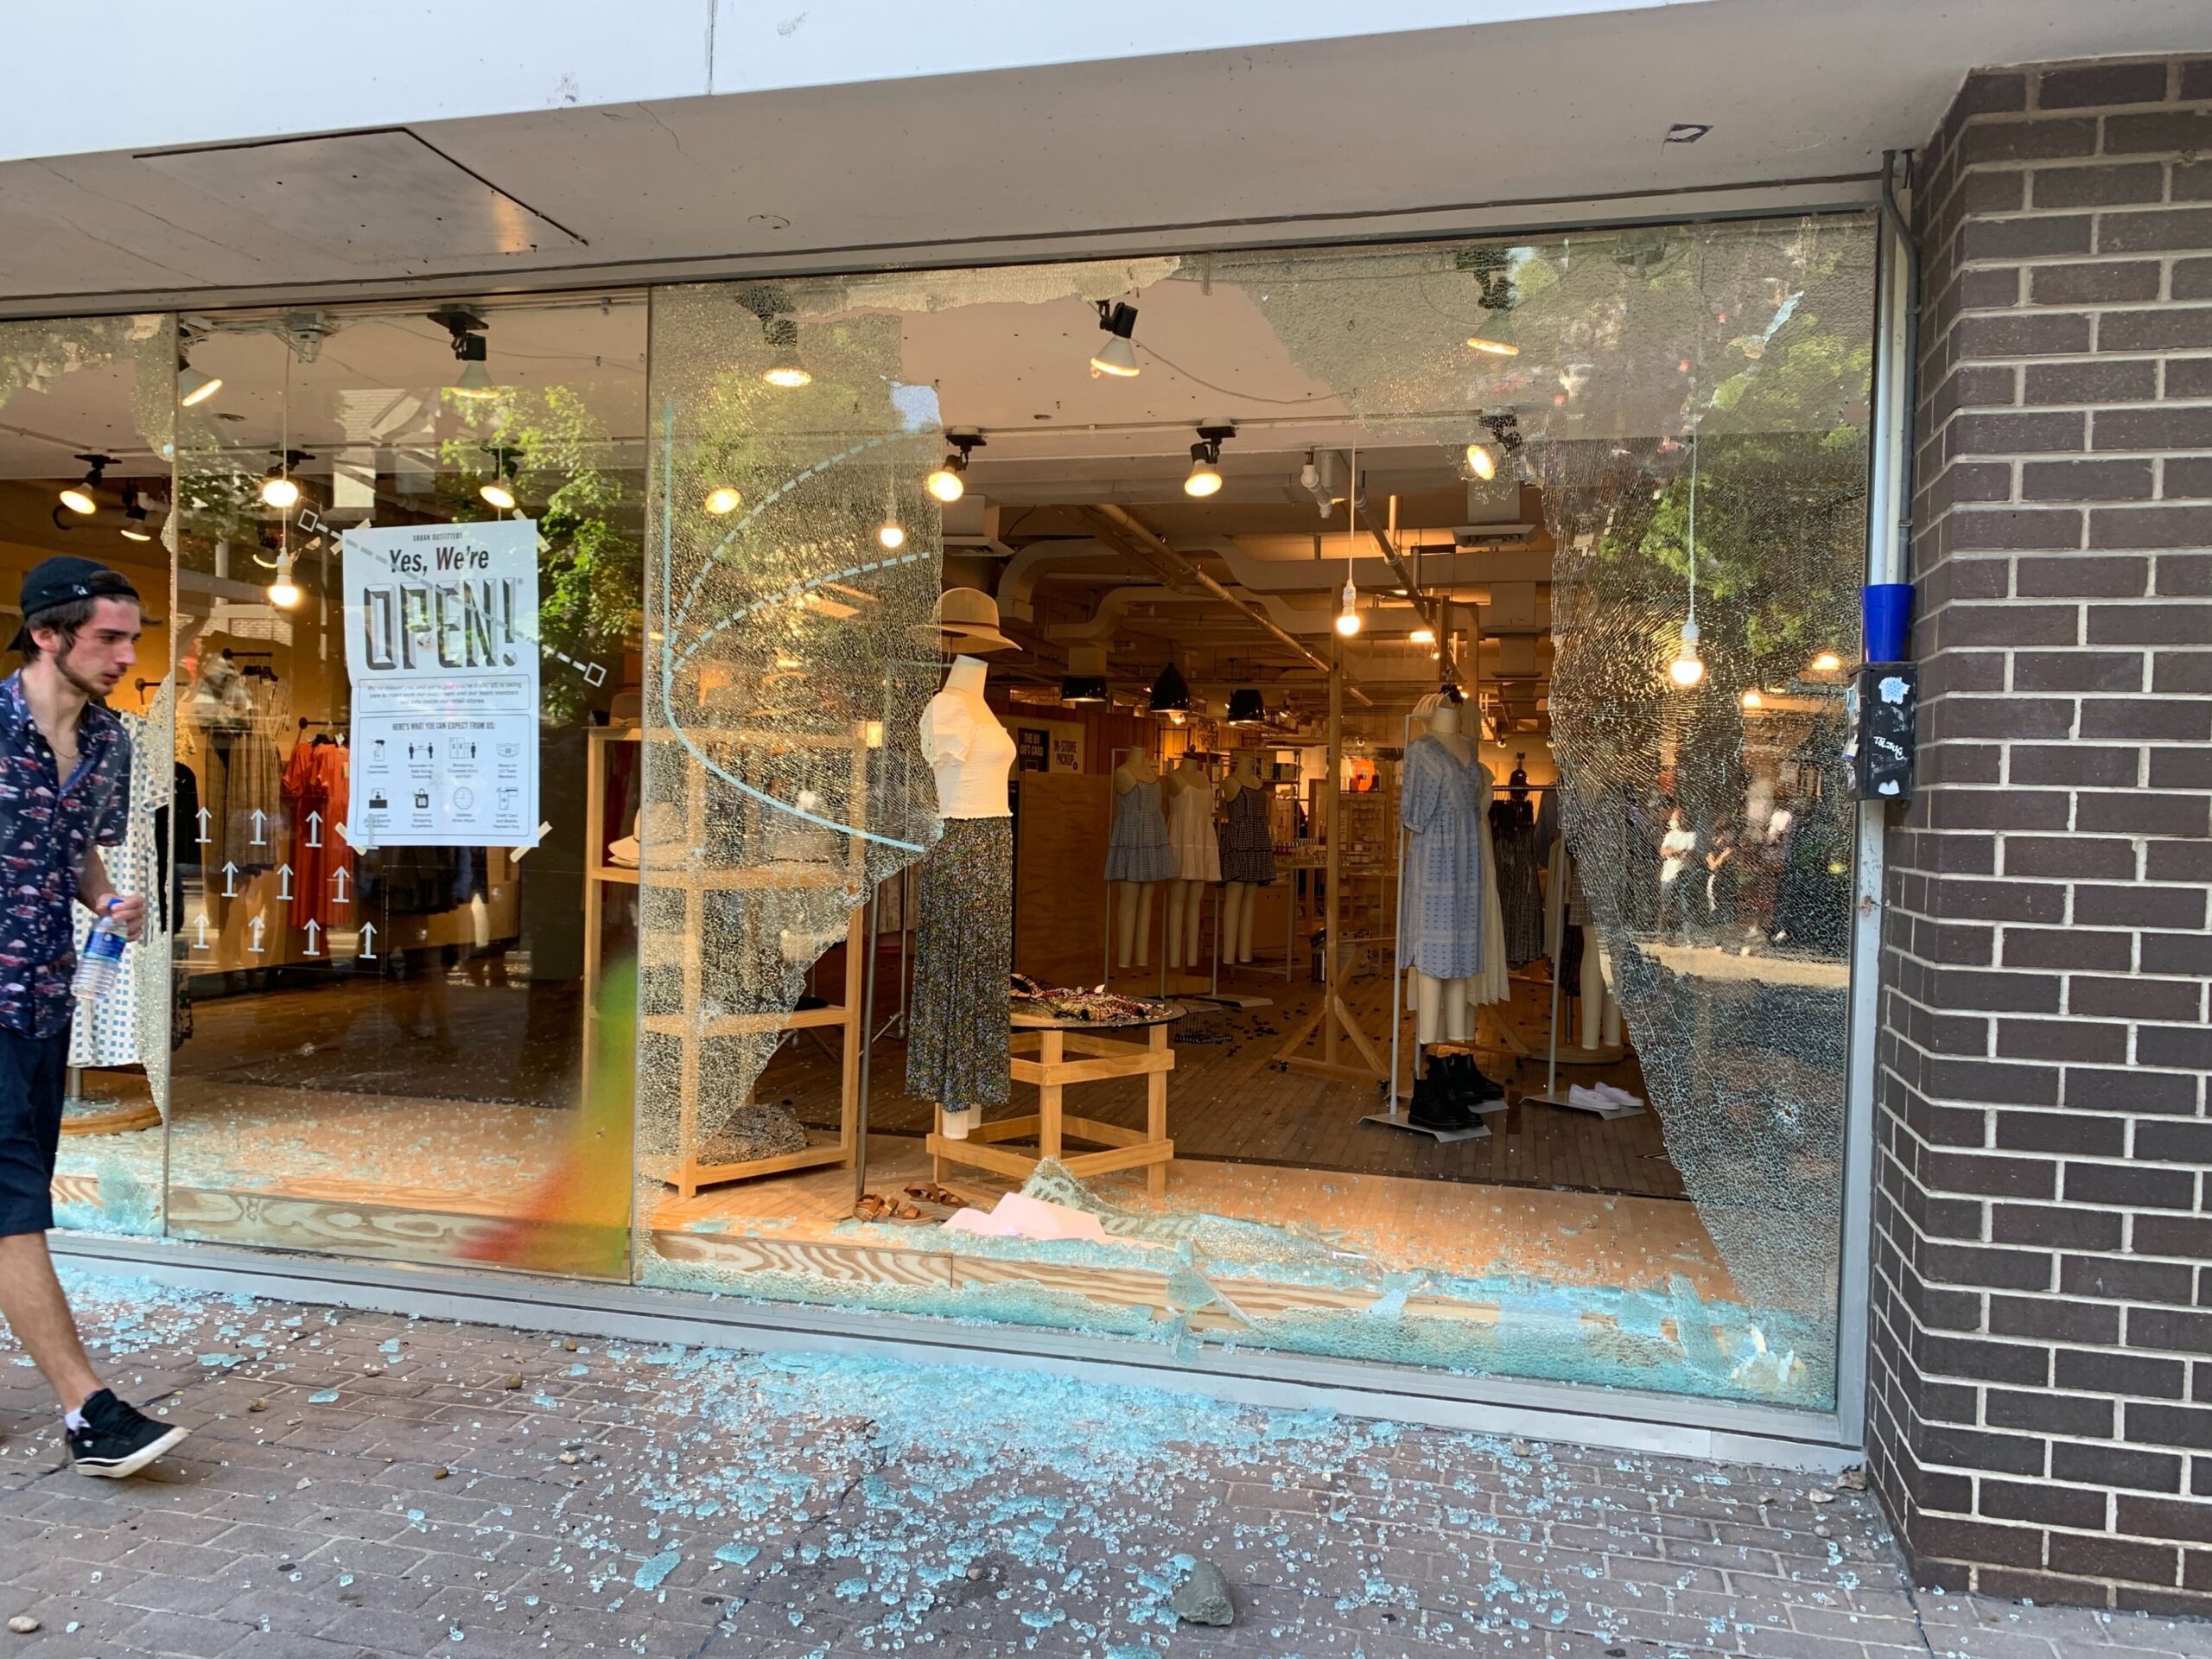 Smashed store window